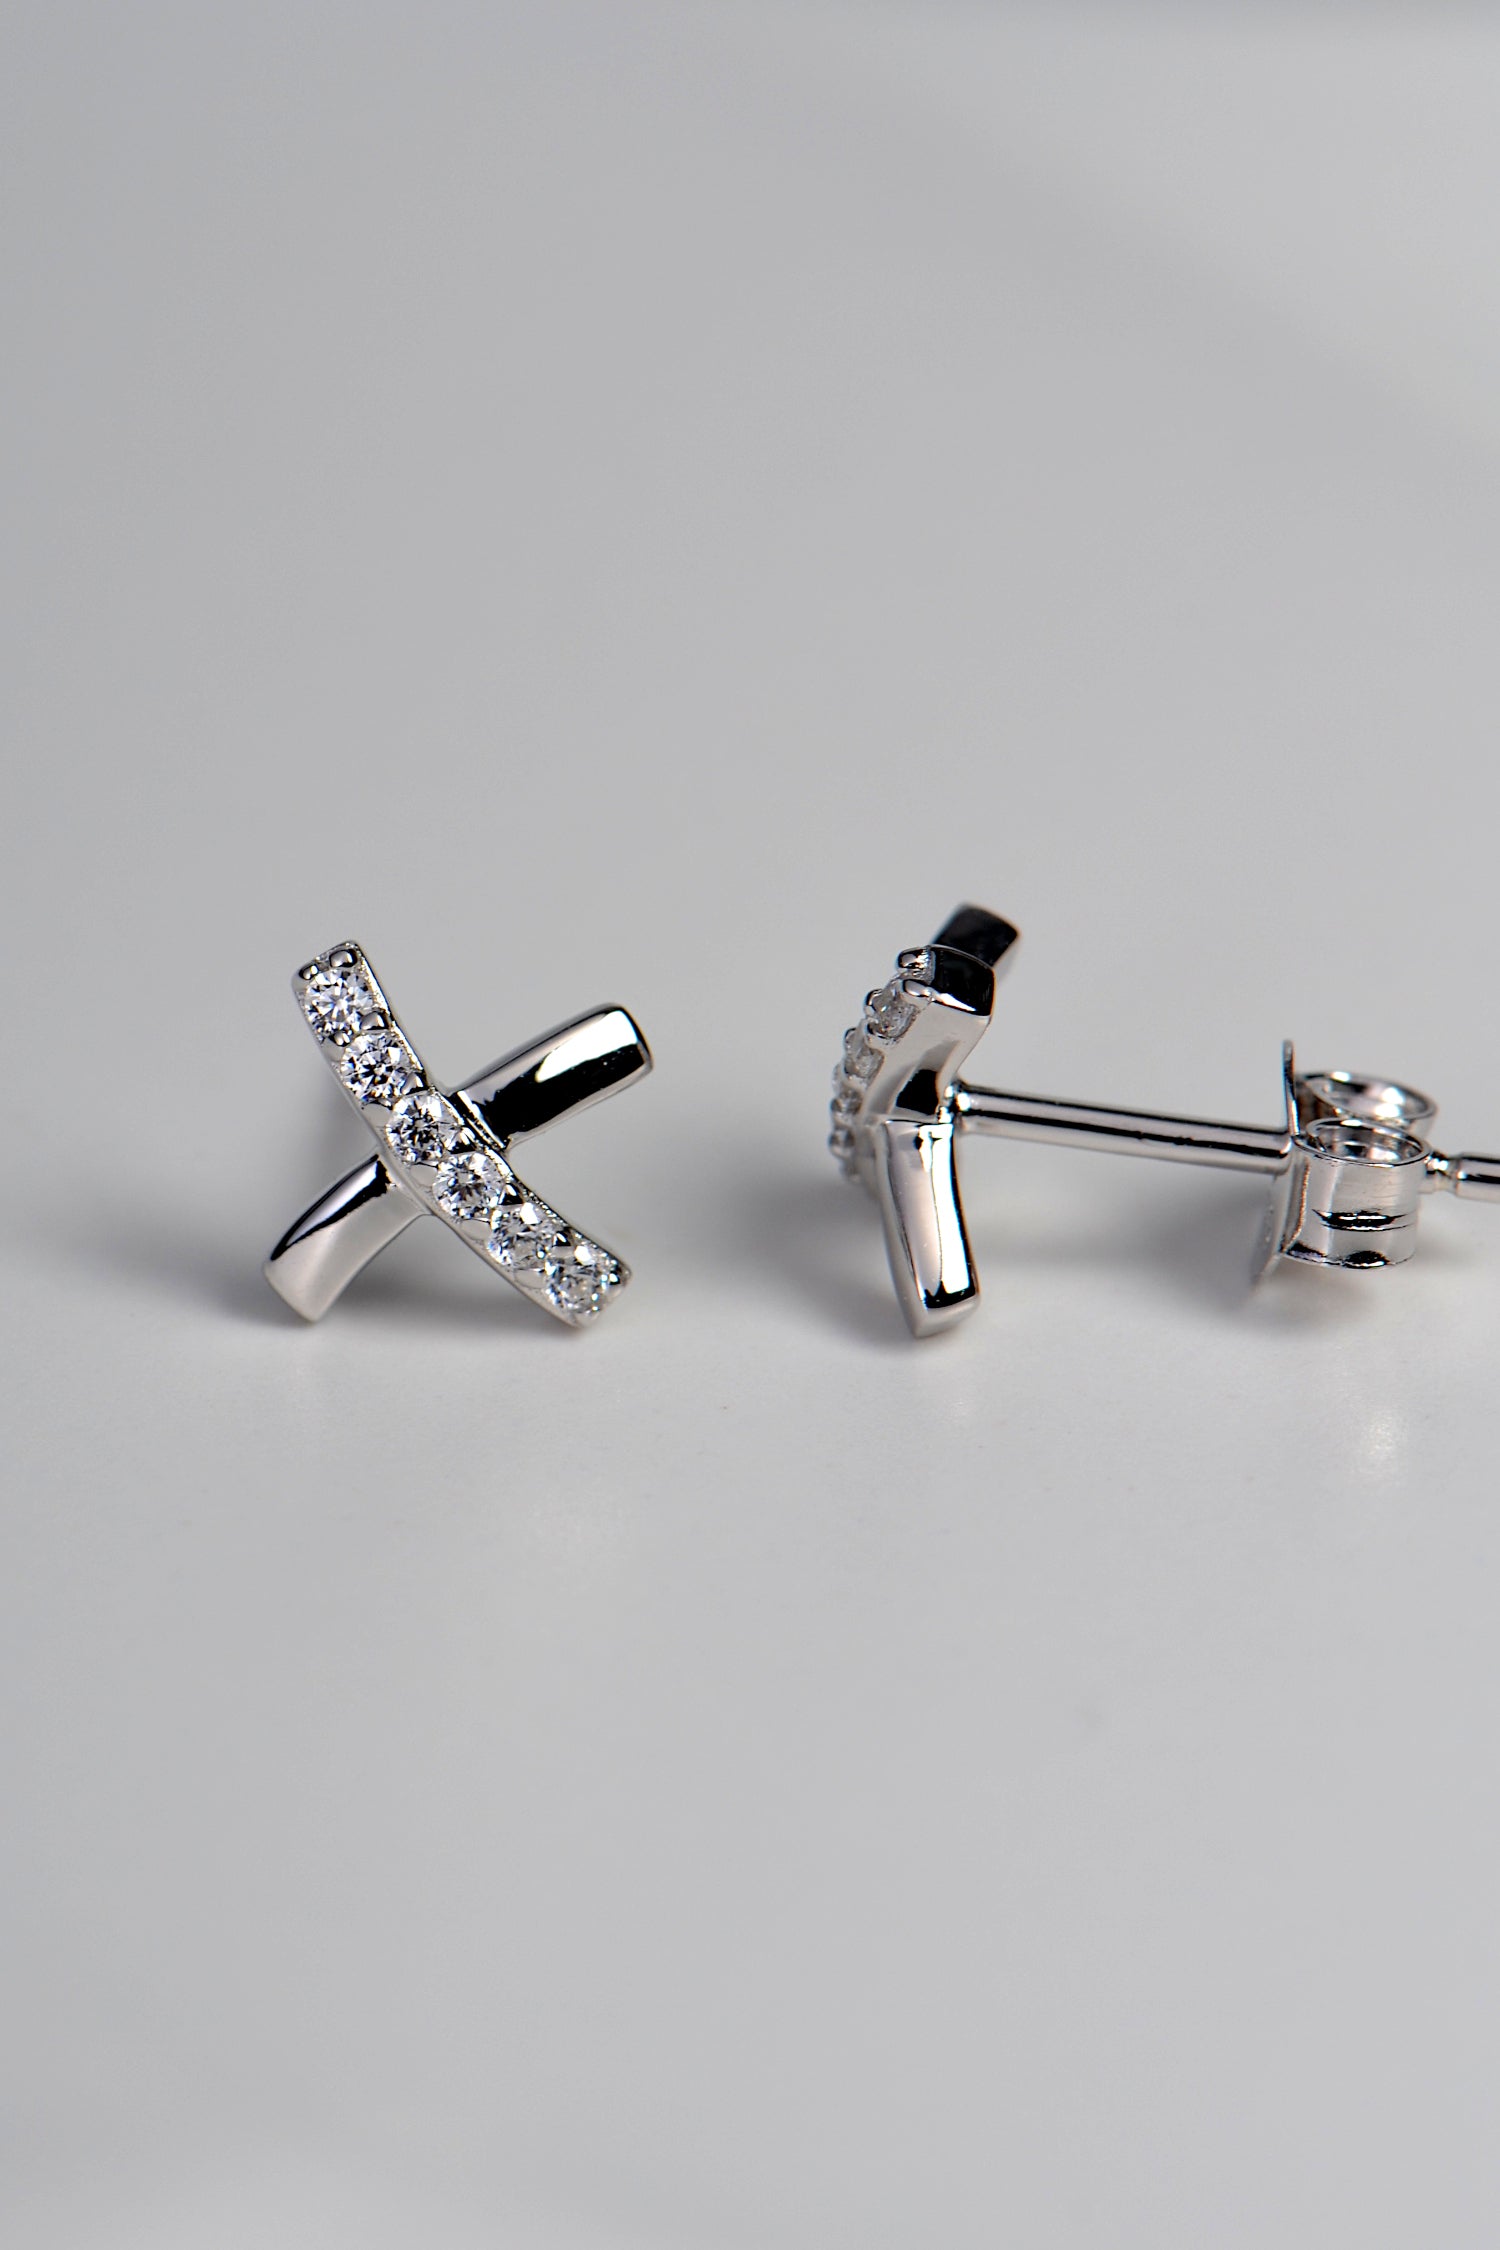 sterling silver stud earrings in a cross shape like a kiss